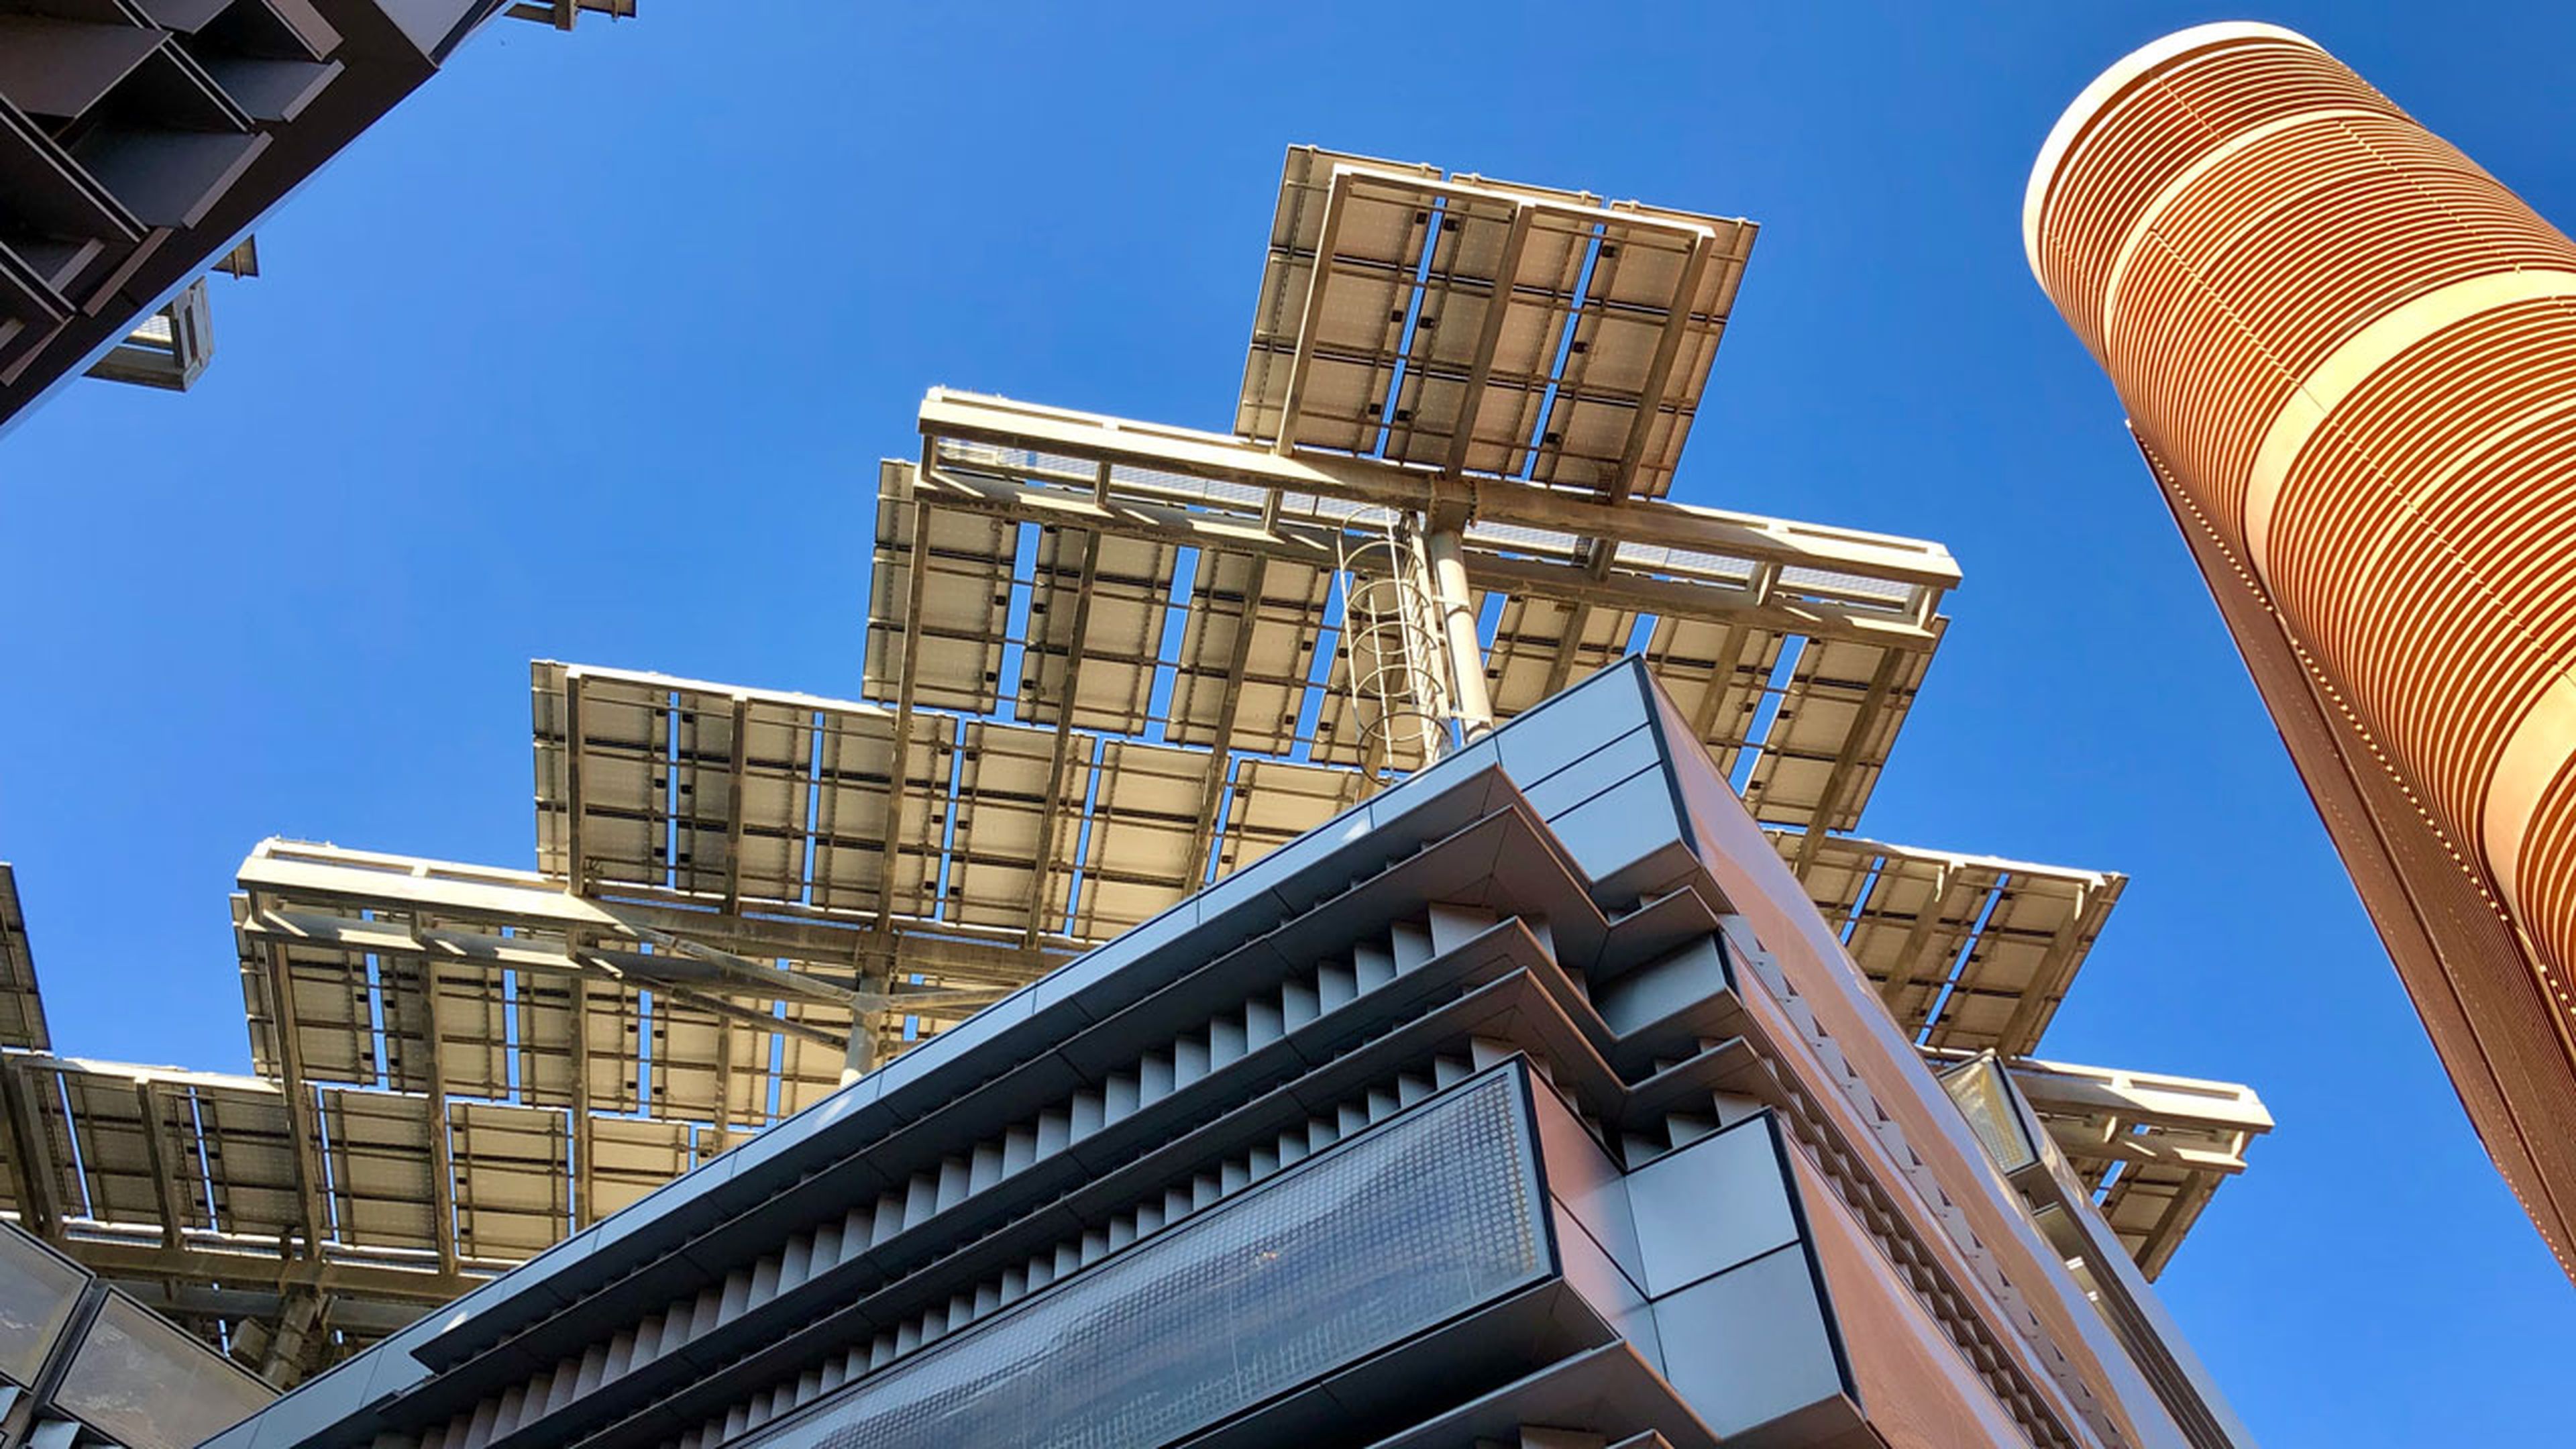 Paneles solares en el tejado de los edificios de Masdar City.